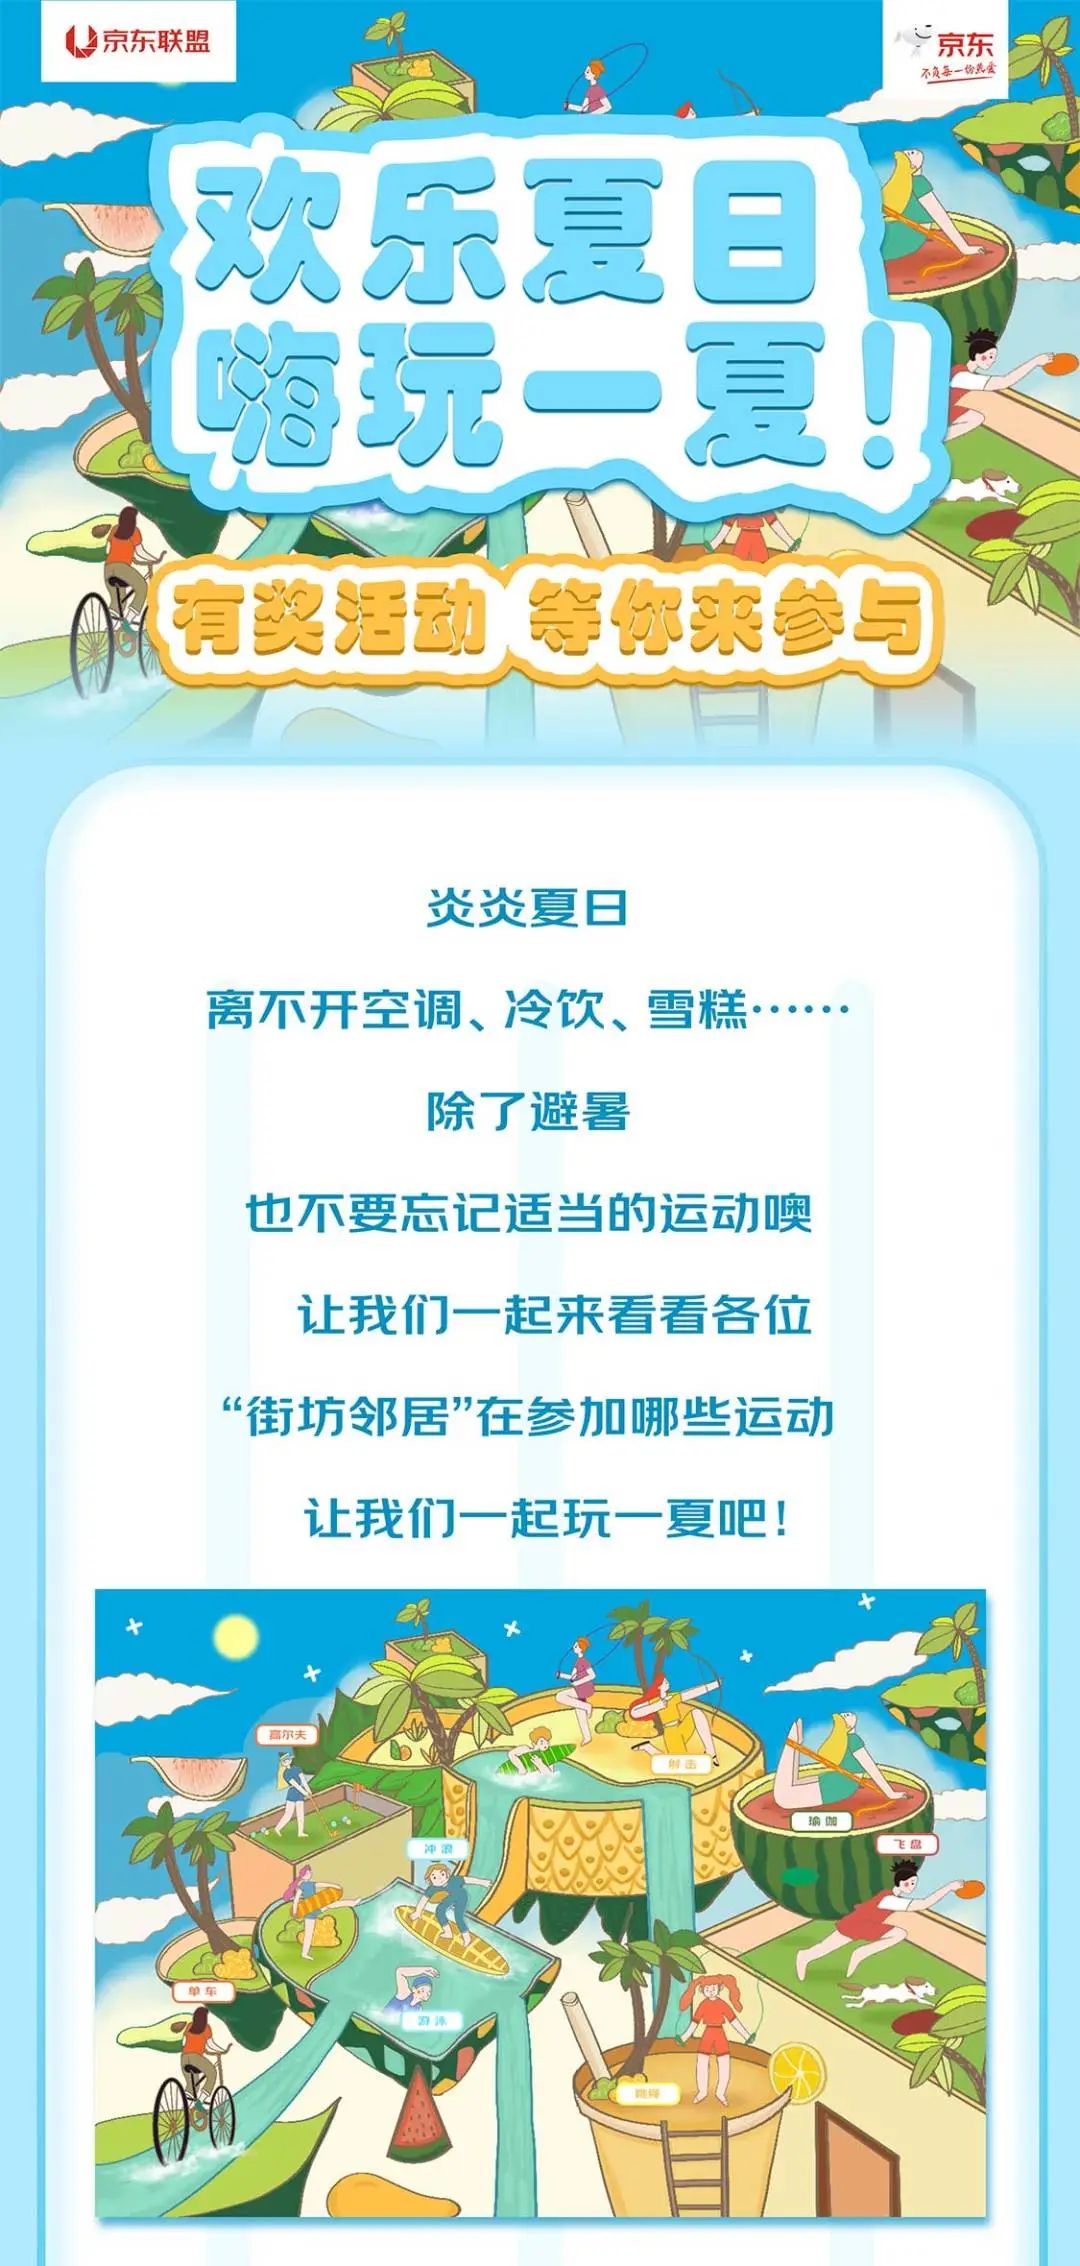 京东联盟欢乐夏日，嗨玩一夏~有奖活动，等你来参与！